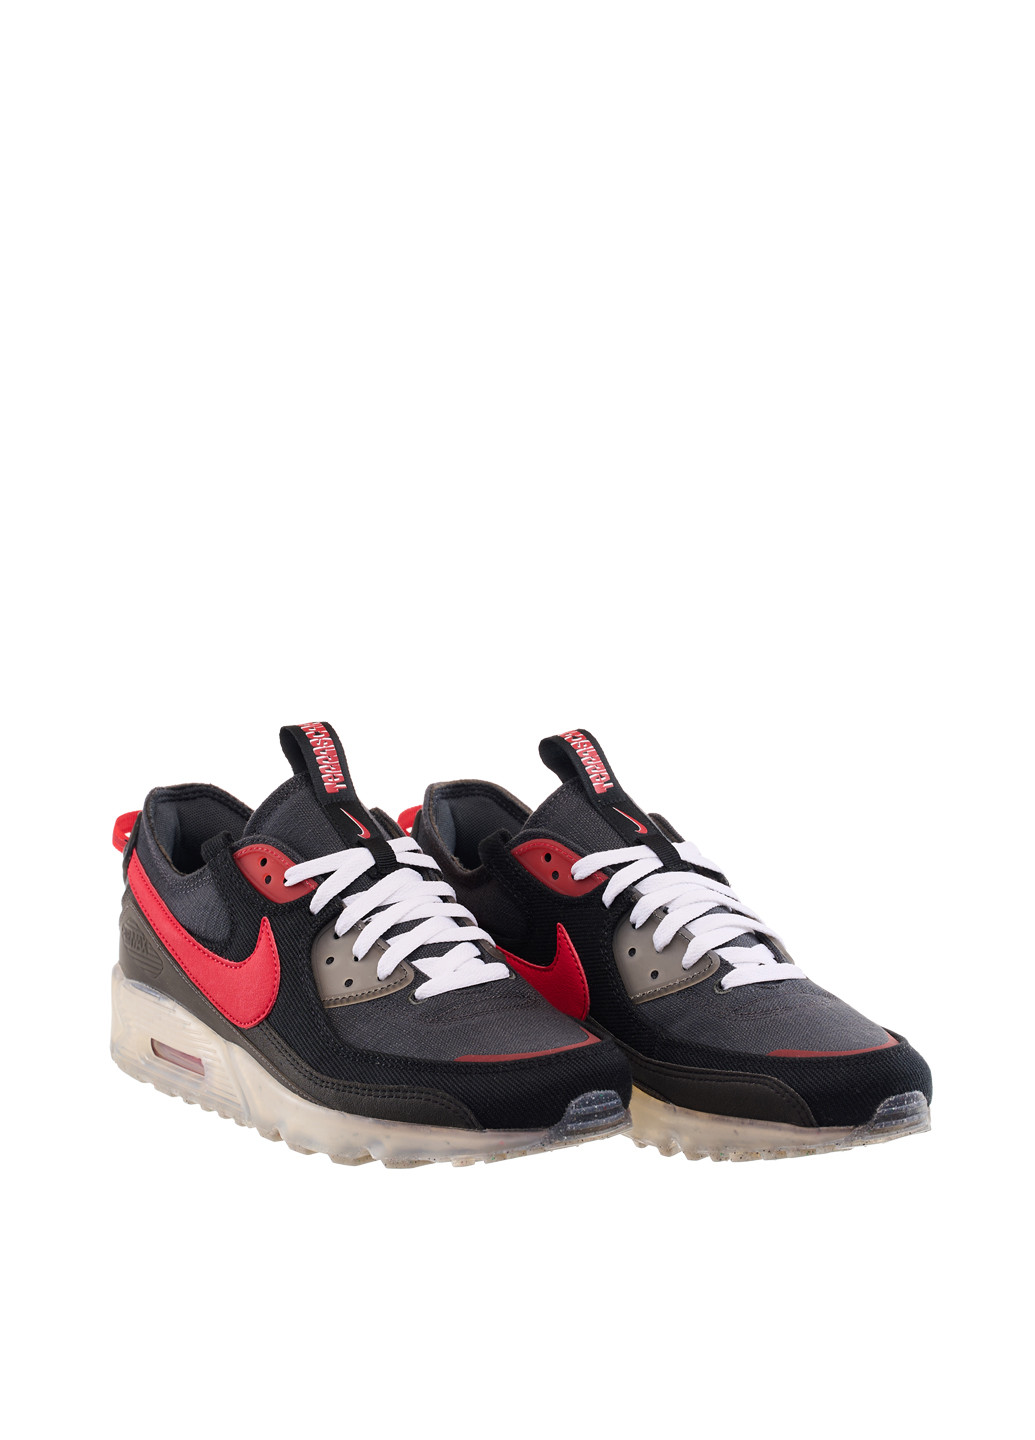 Цветные демисезонные кроссовки dv7413-003_2024 Nike Air Max Terrascape 90